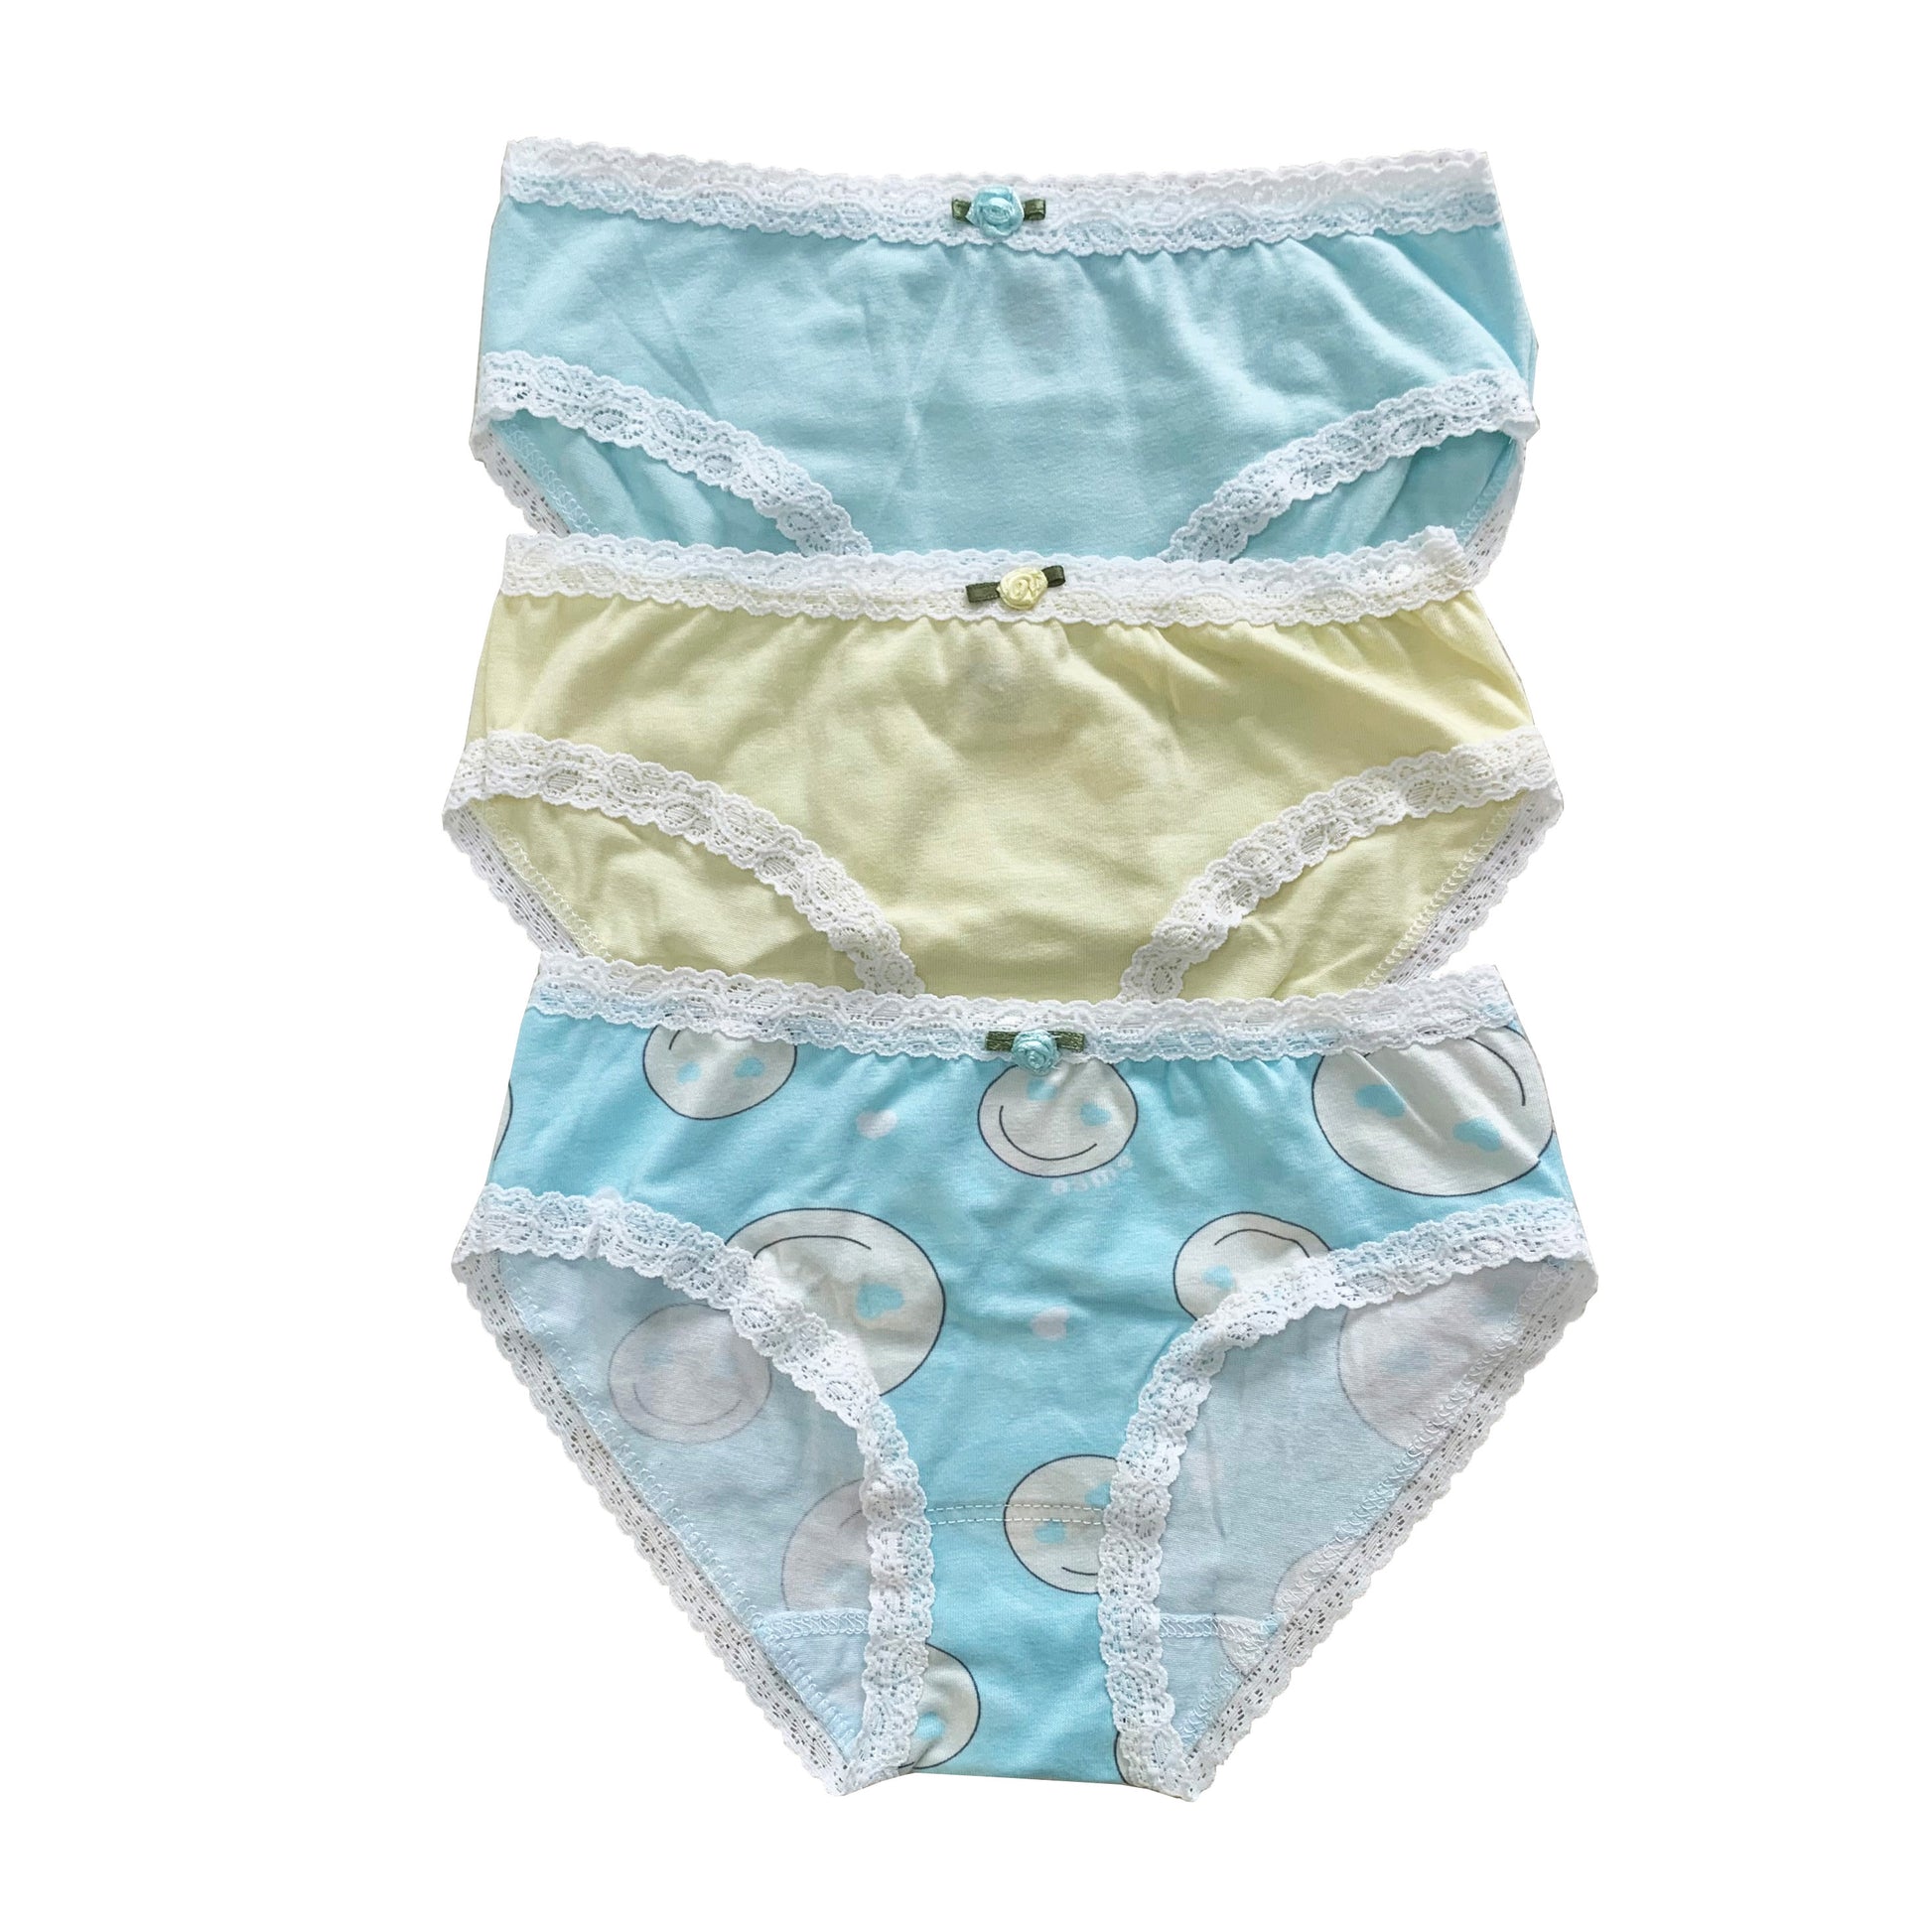 U20 Esme Girl's 7-Pack & 5-Pack Panty in Solid Colors – DoReMiFa-esme